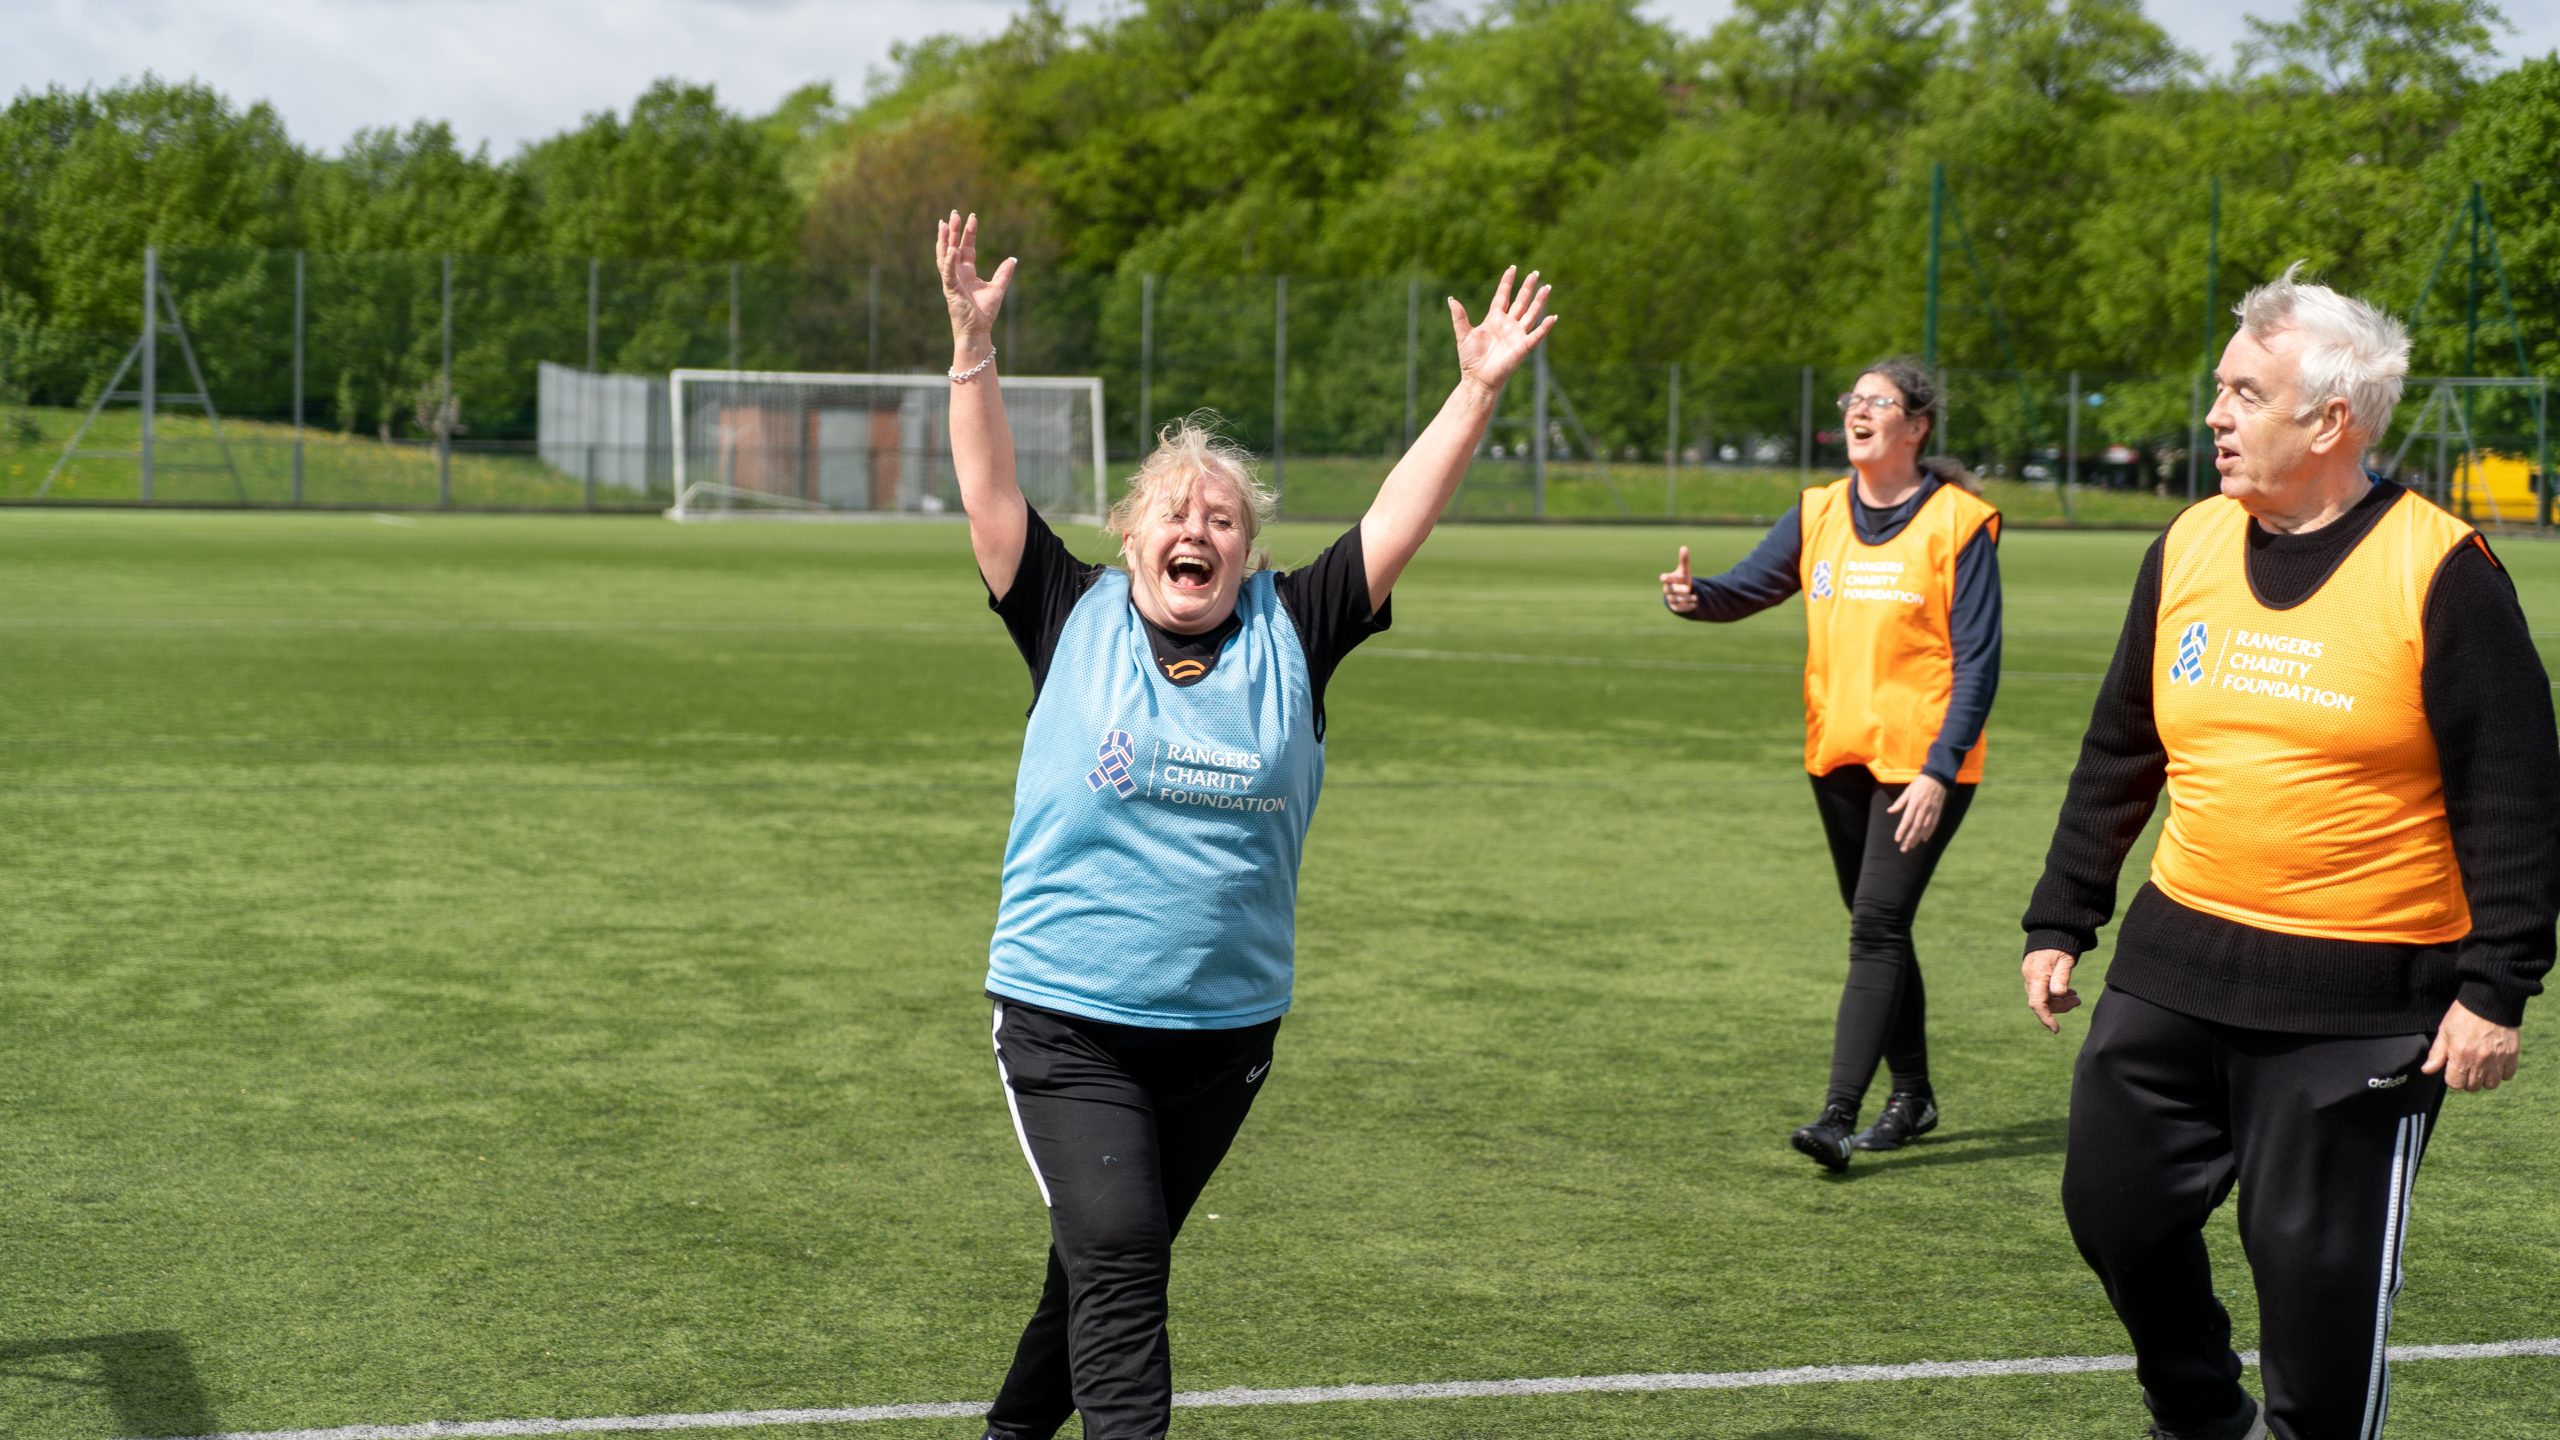 woman celebrates scoring a goal